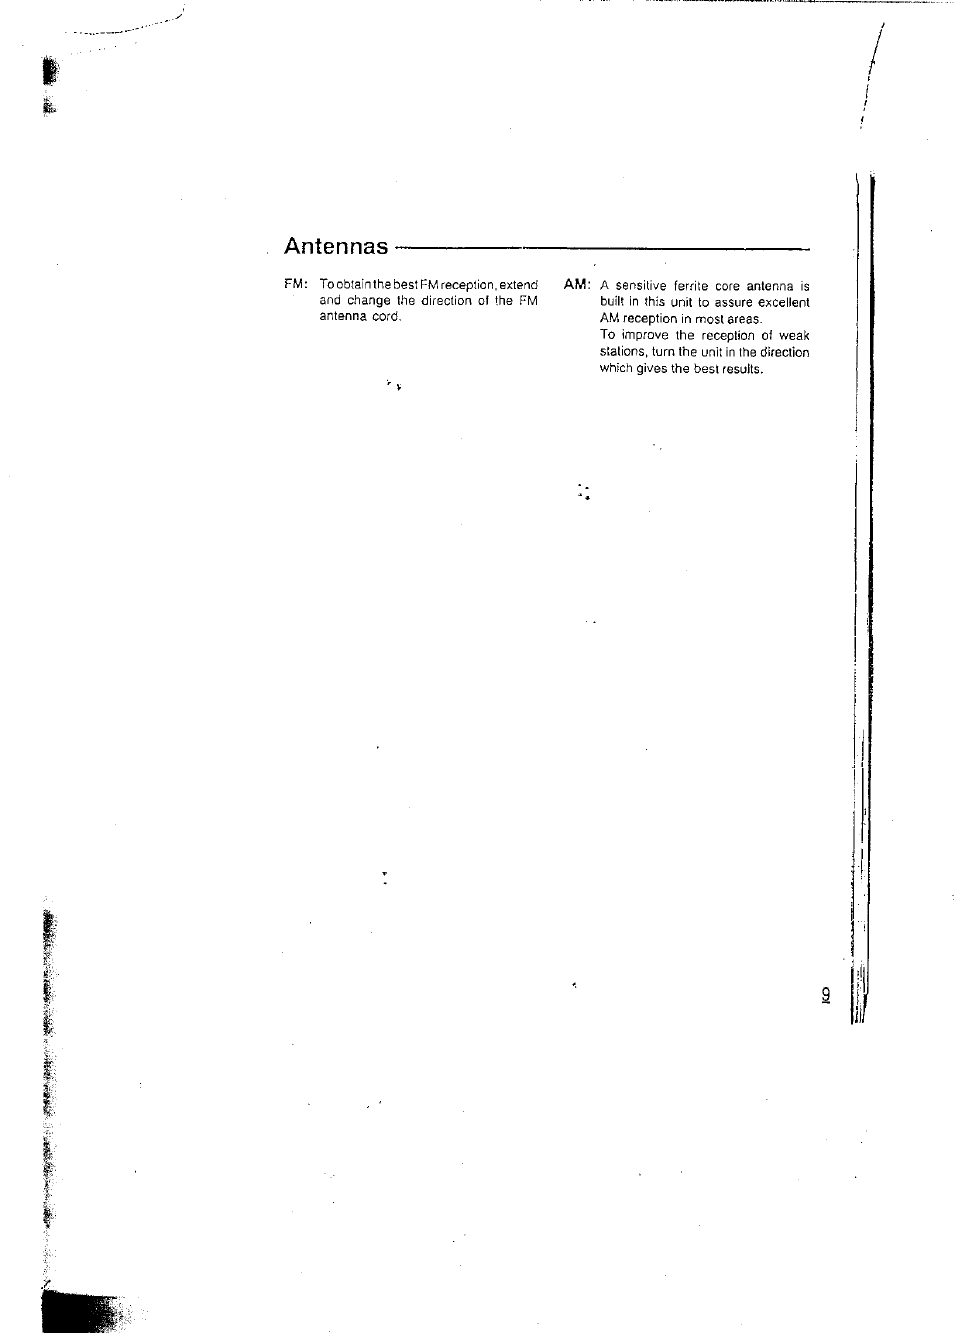 Antennas | Panasonic RCX160 User Manual | Page 9 / 23